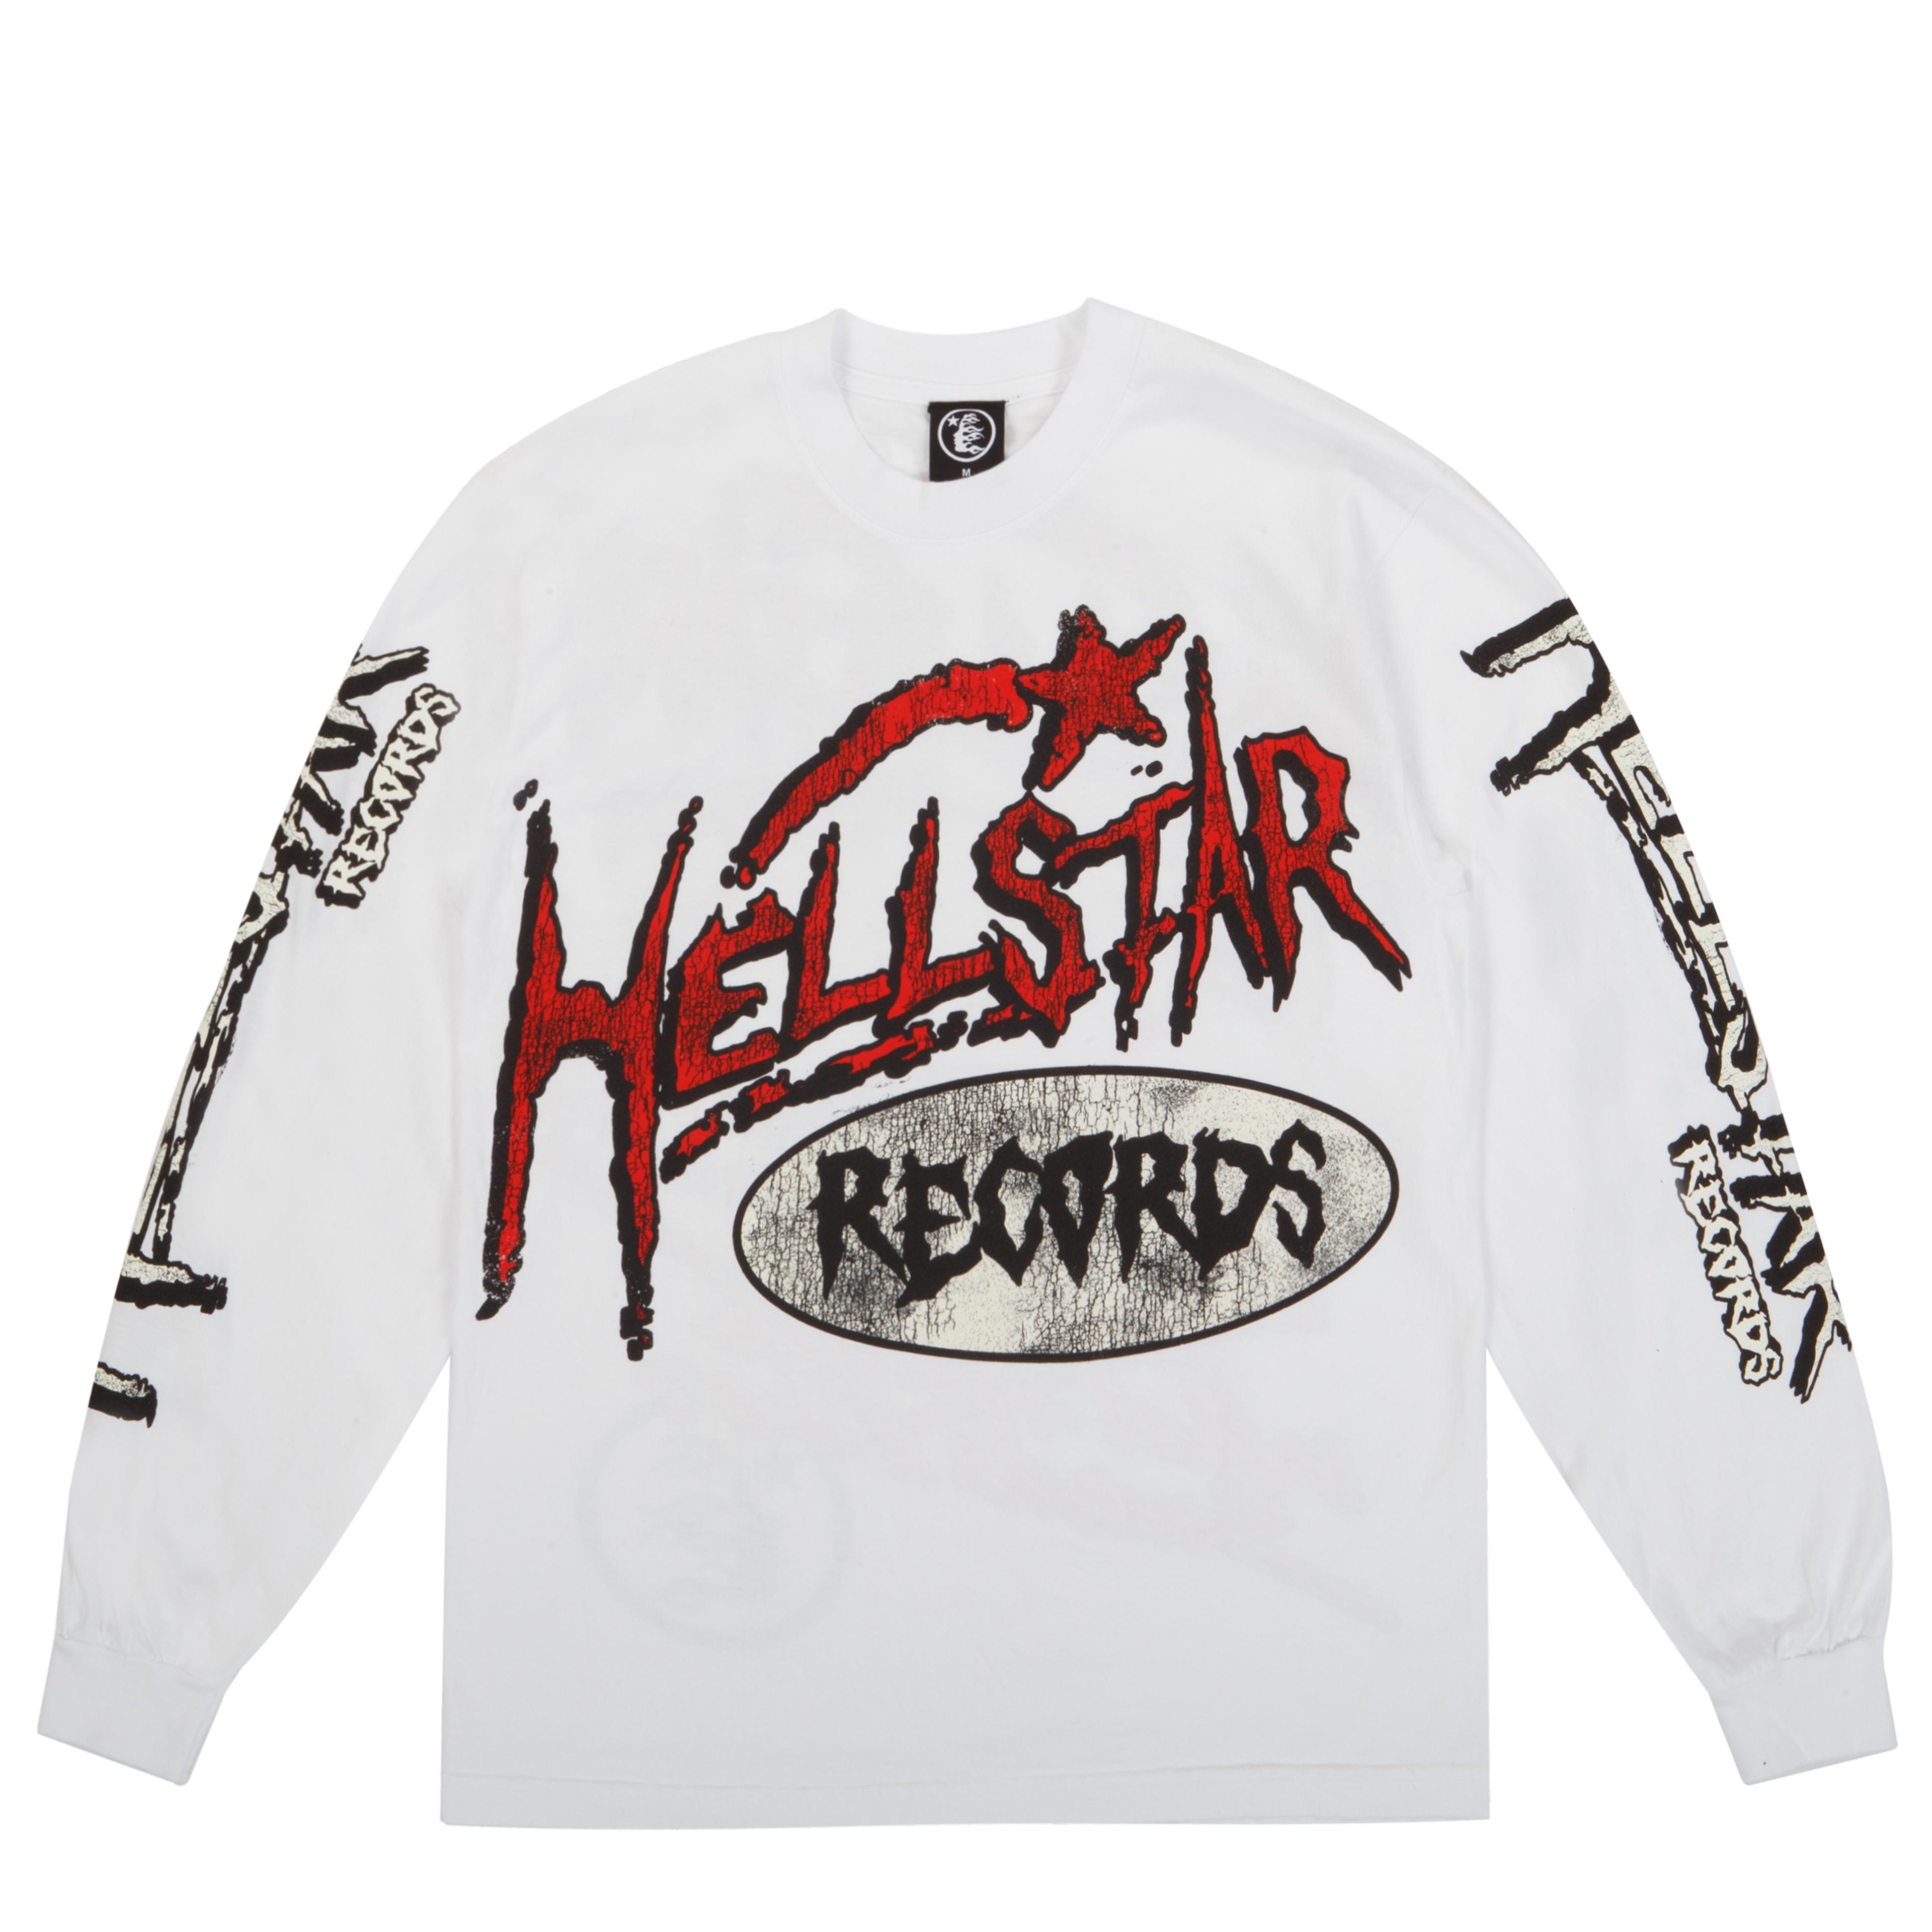 Hellstar Records Longsleeve White